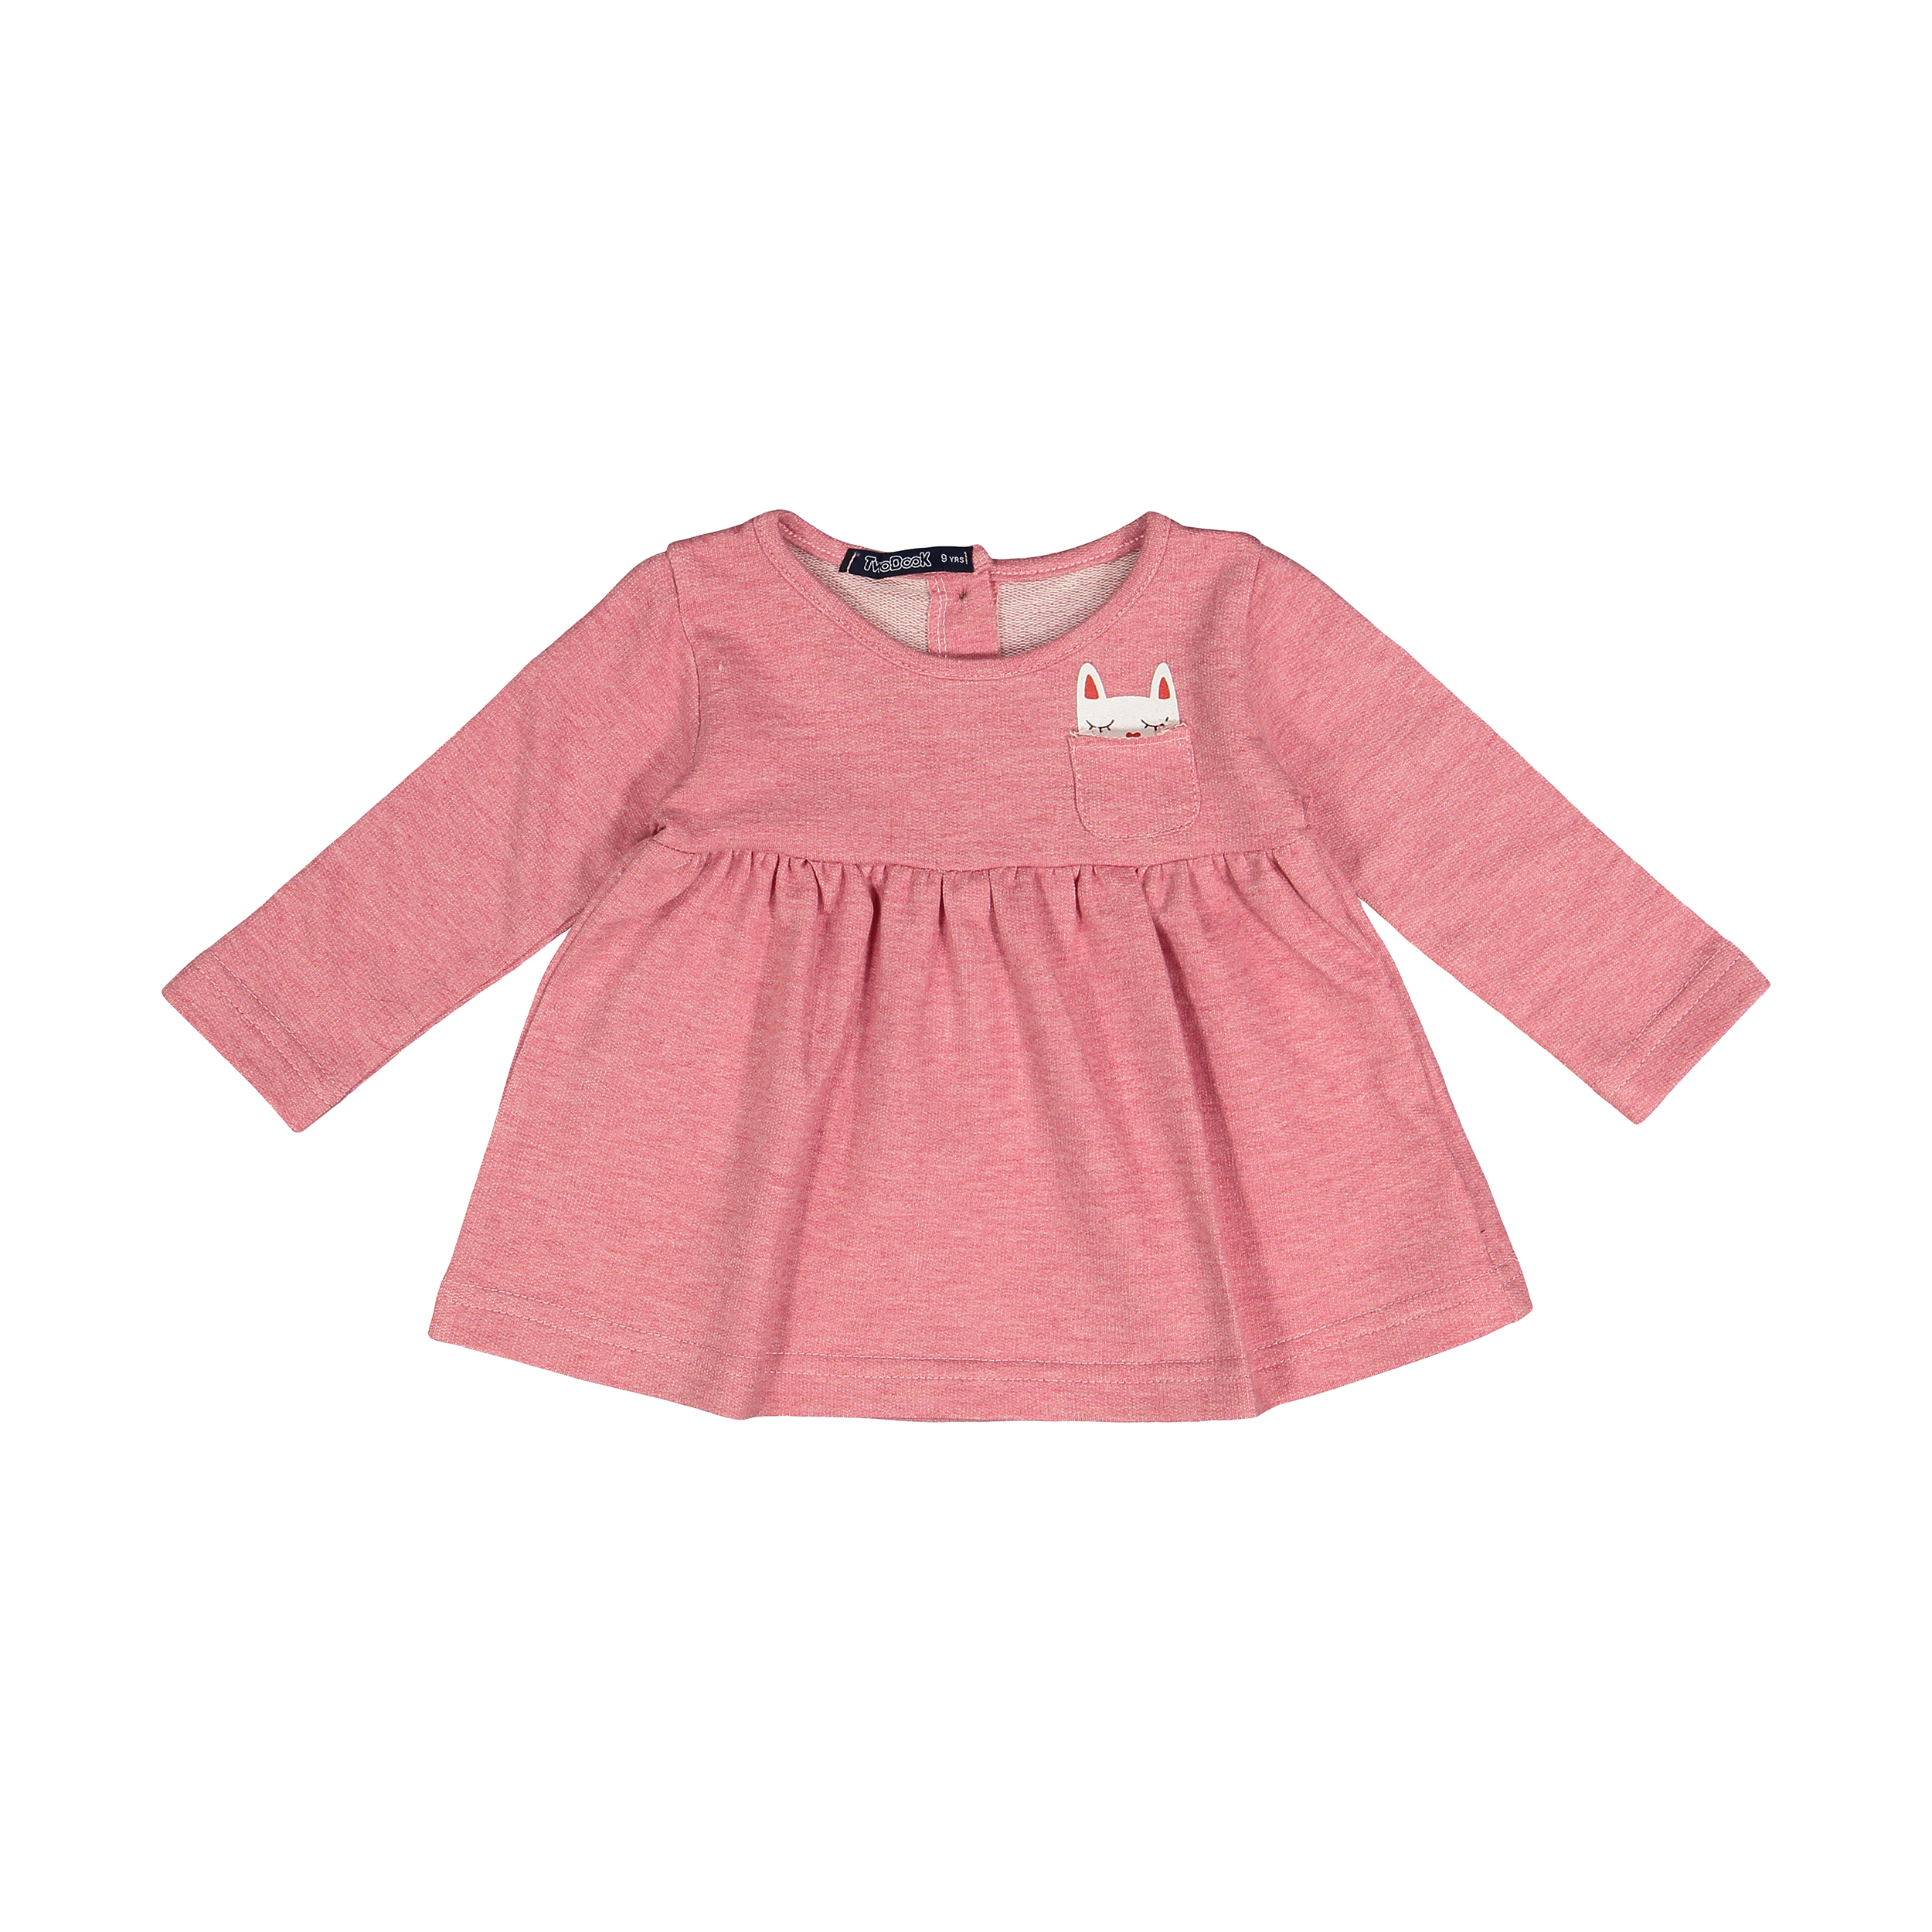 پیراهن نوزادی دخترانه تودوک مدل 2151189-84 -  - 1